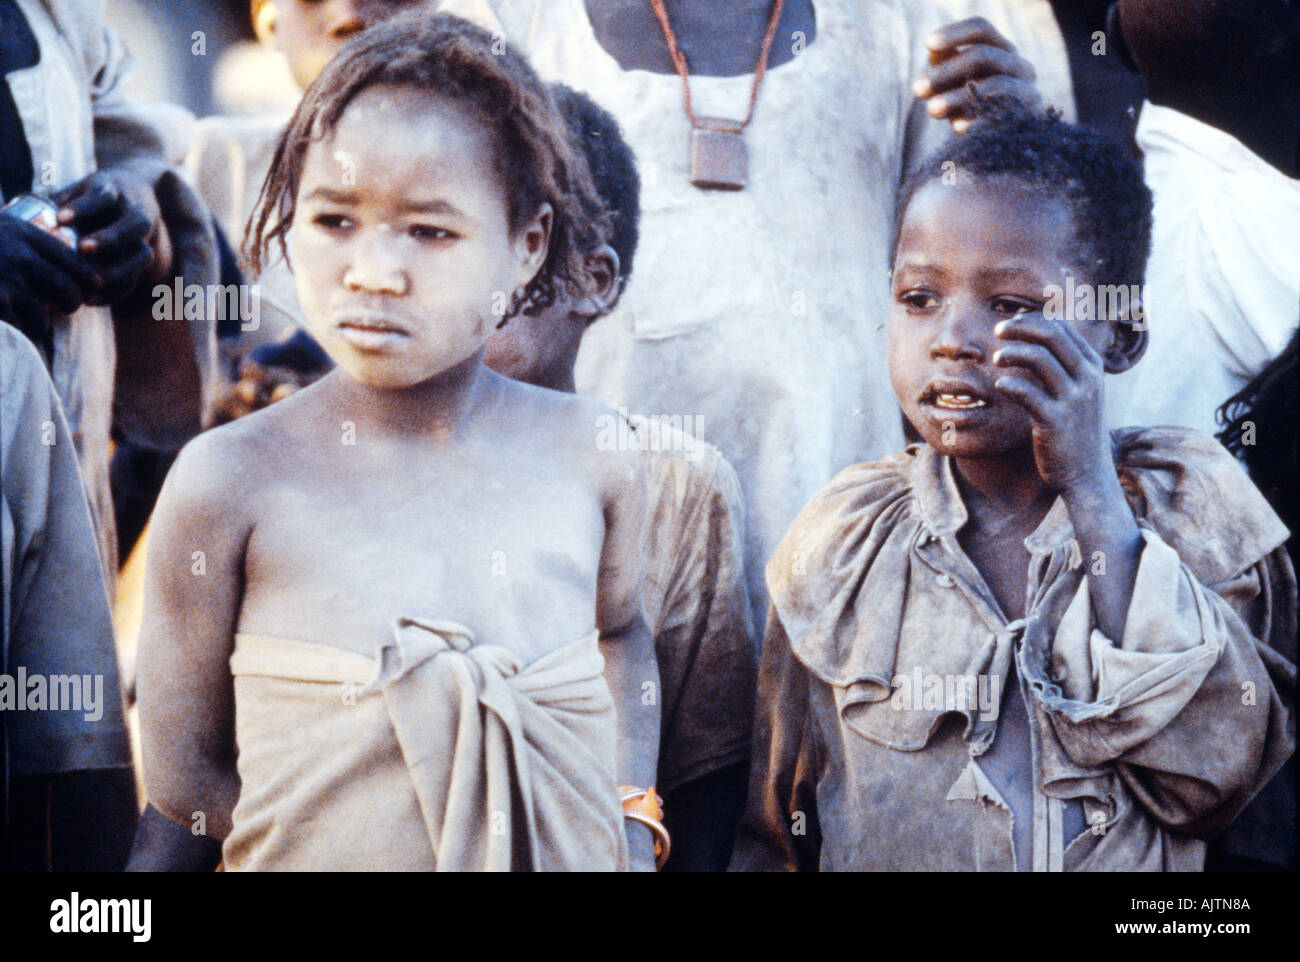 Tendelti Camp Sudan Child Refugees Kwashikor Stock Photo